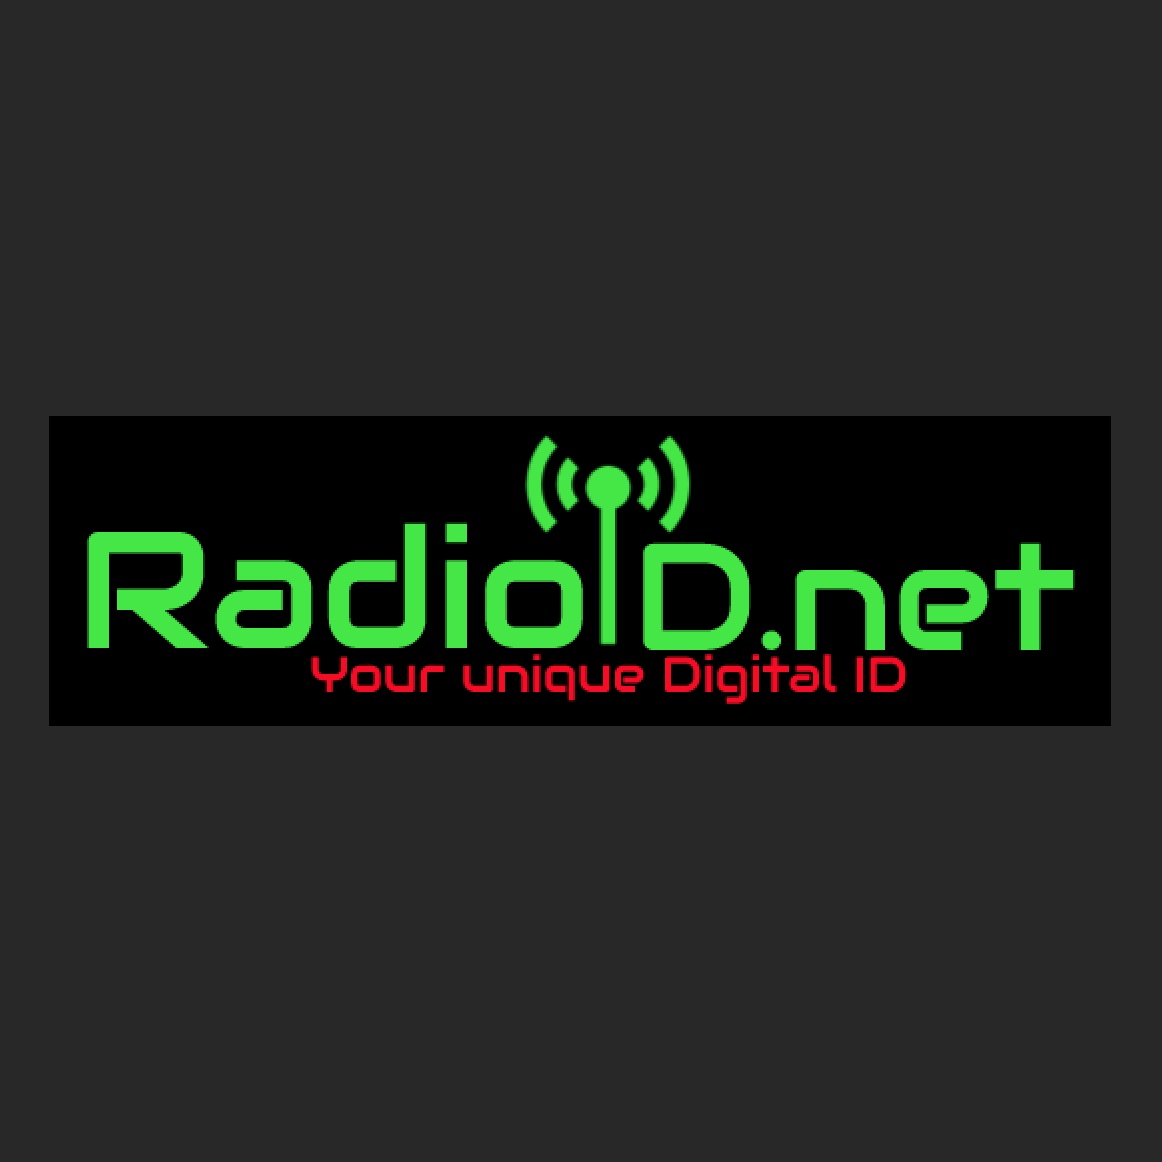 RadioID.net image